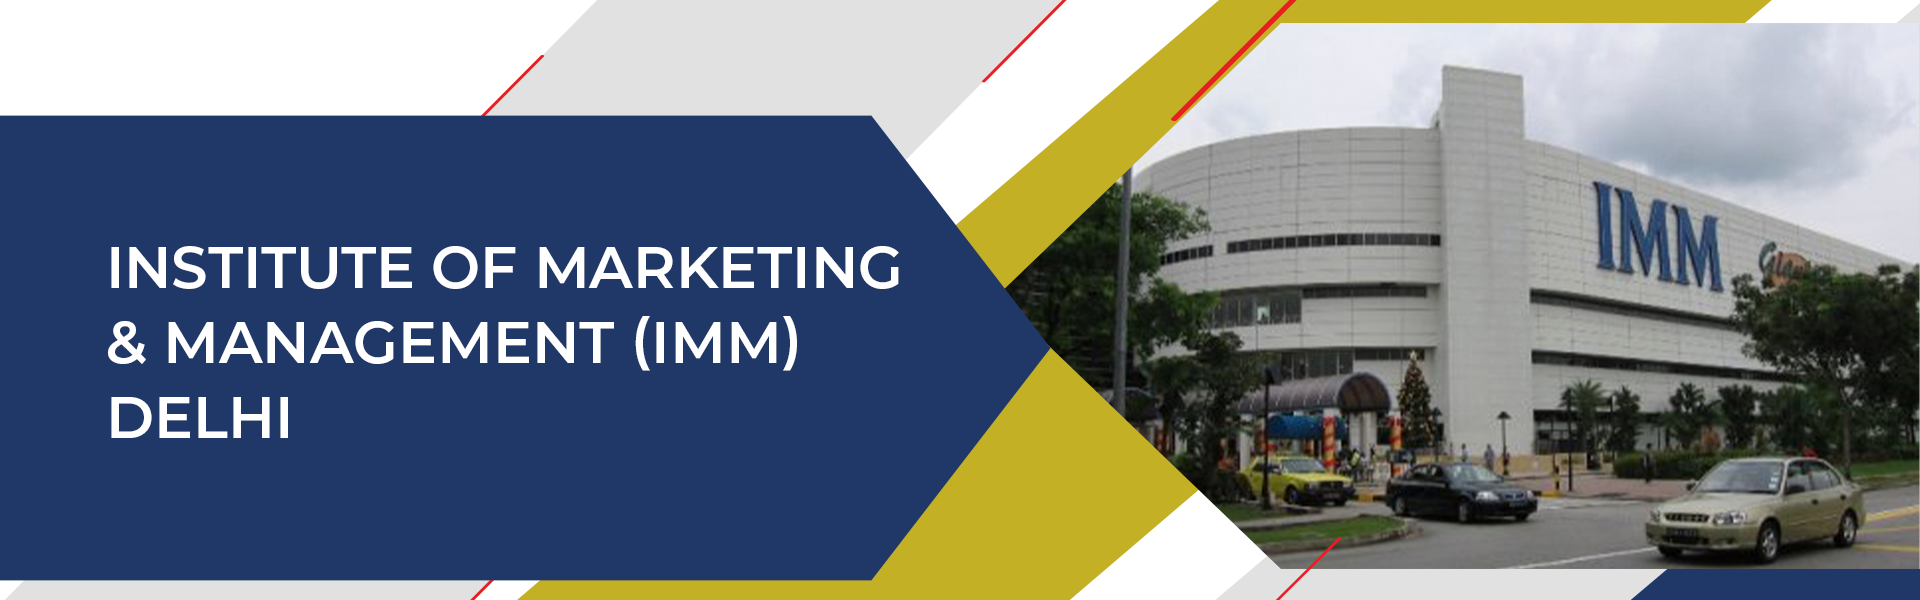 Institute of Marketing & Management (IMM), Delhi